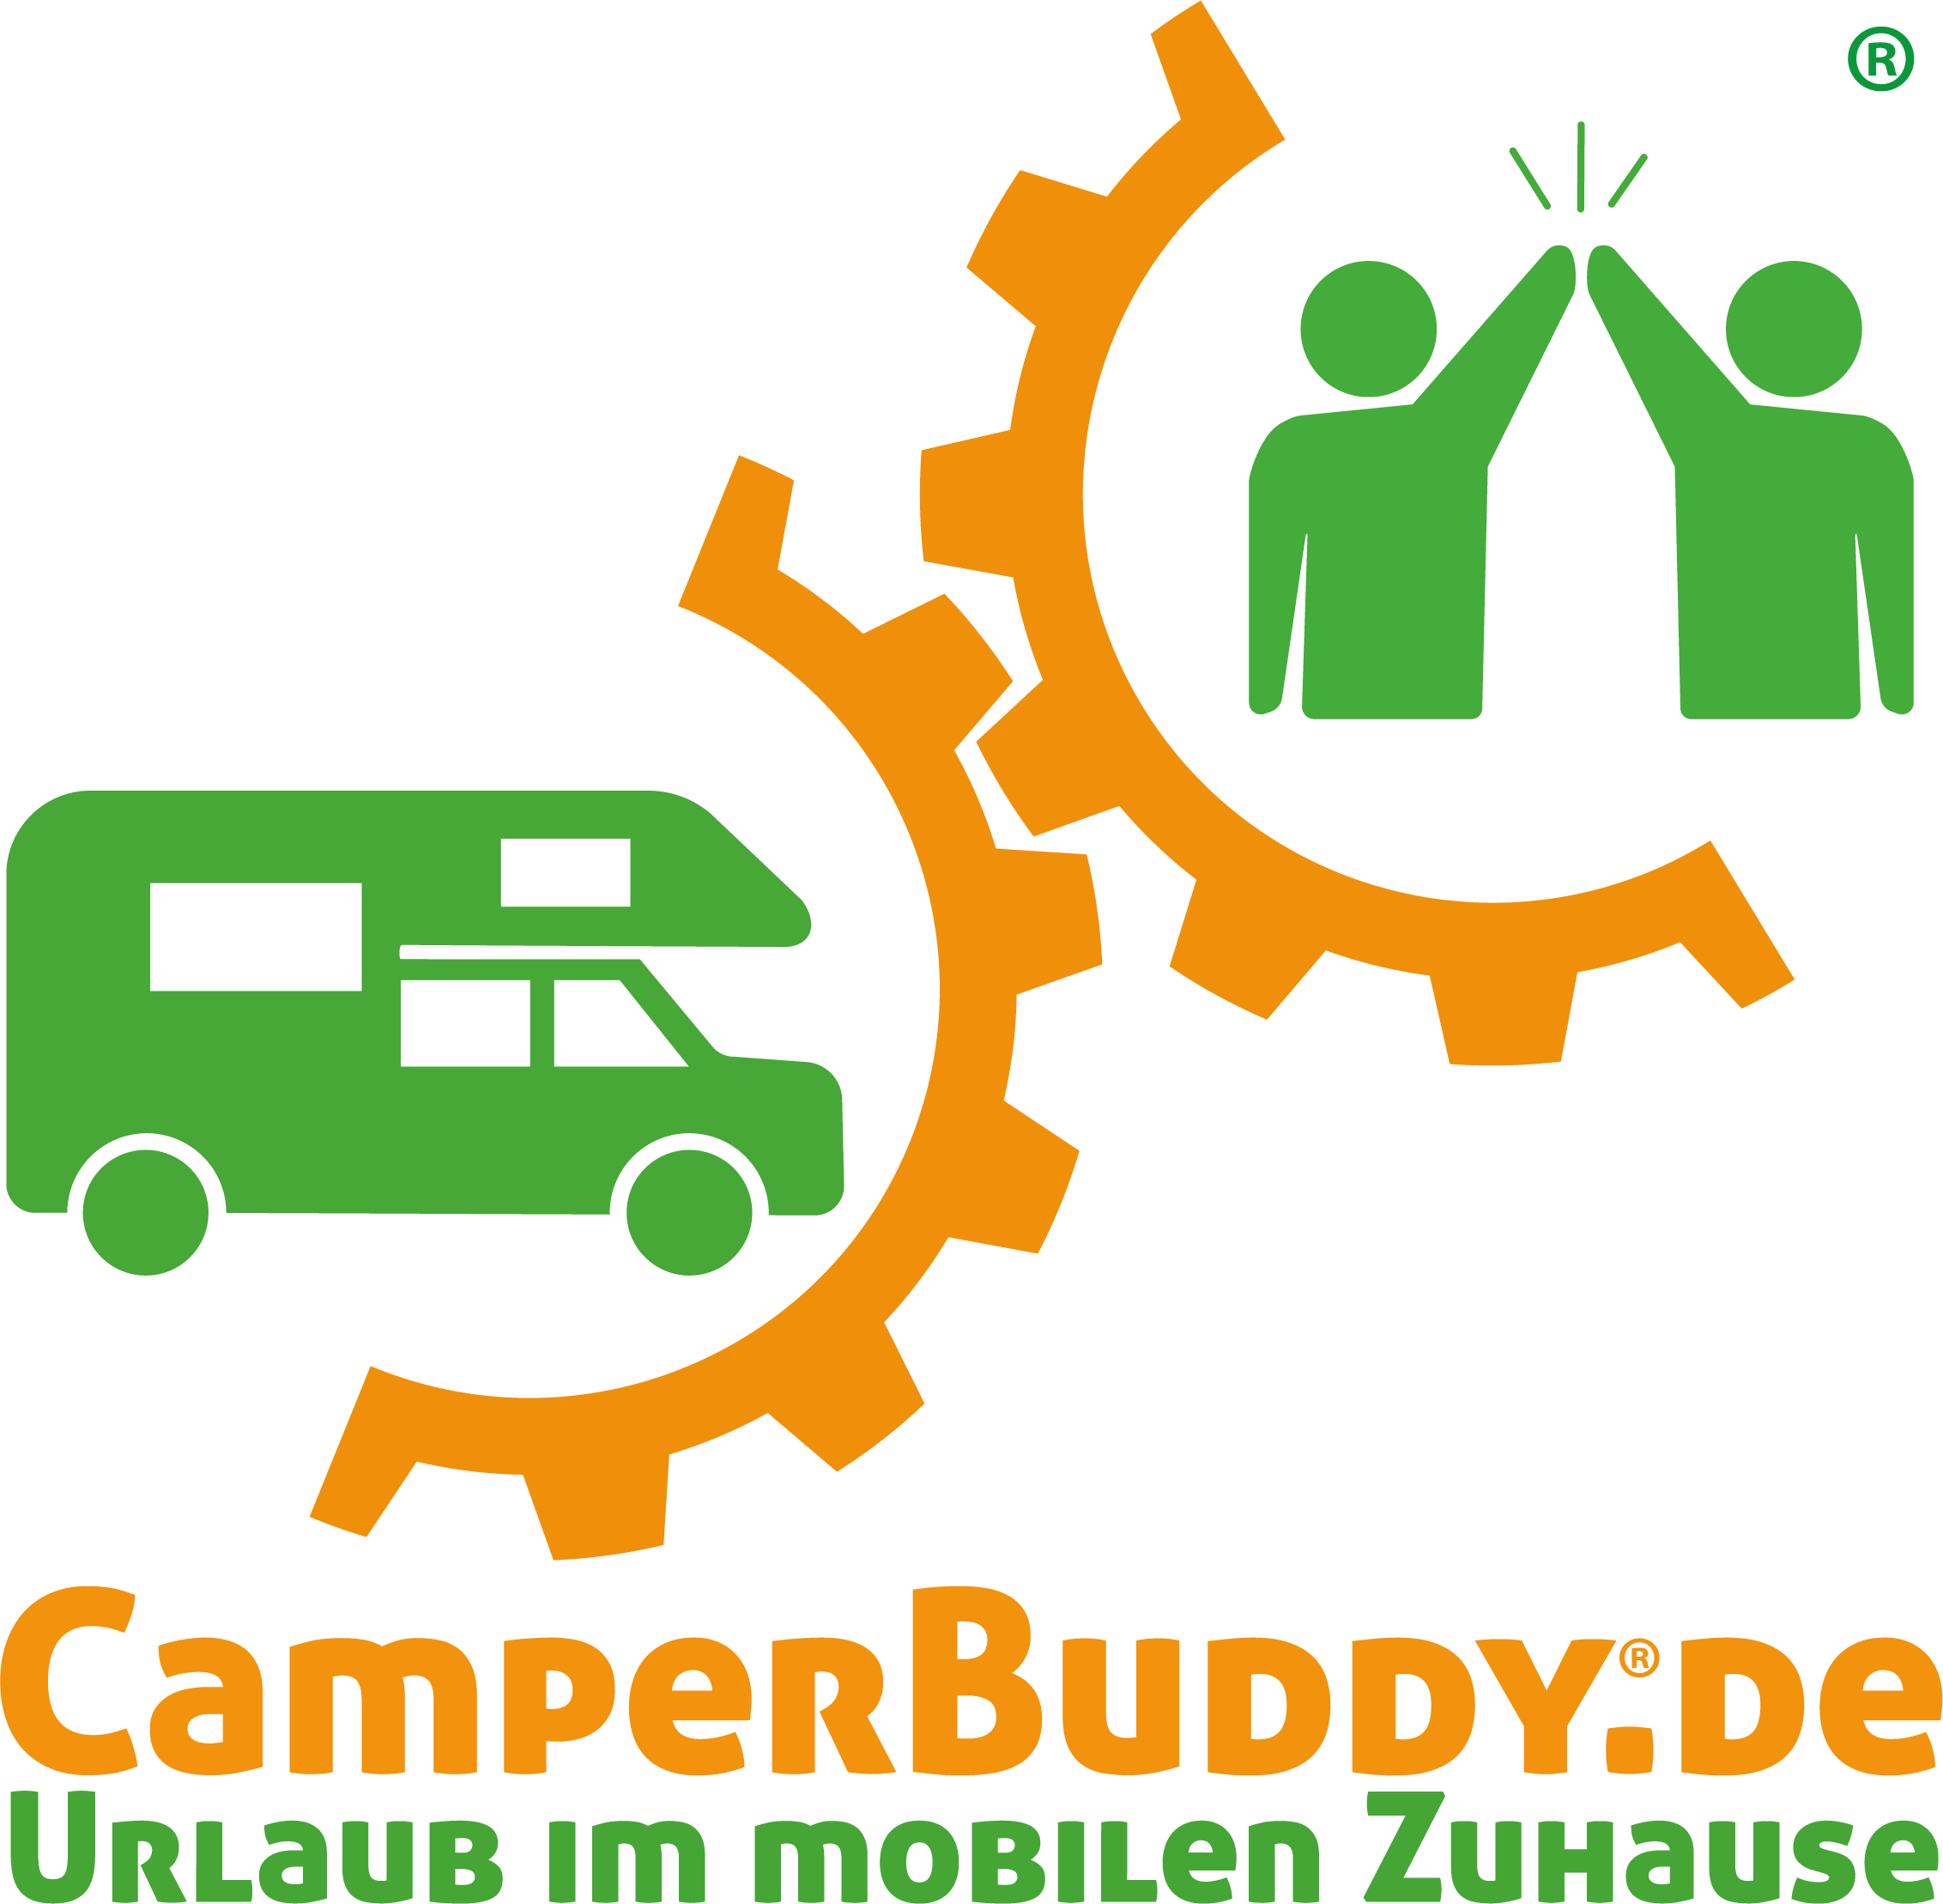 (c) Camperbuddy-urlaubsschutzpaket.de